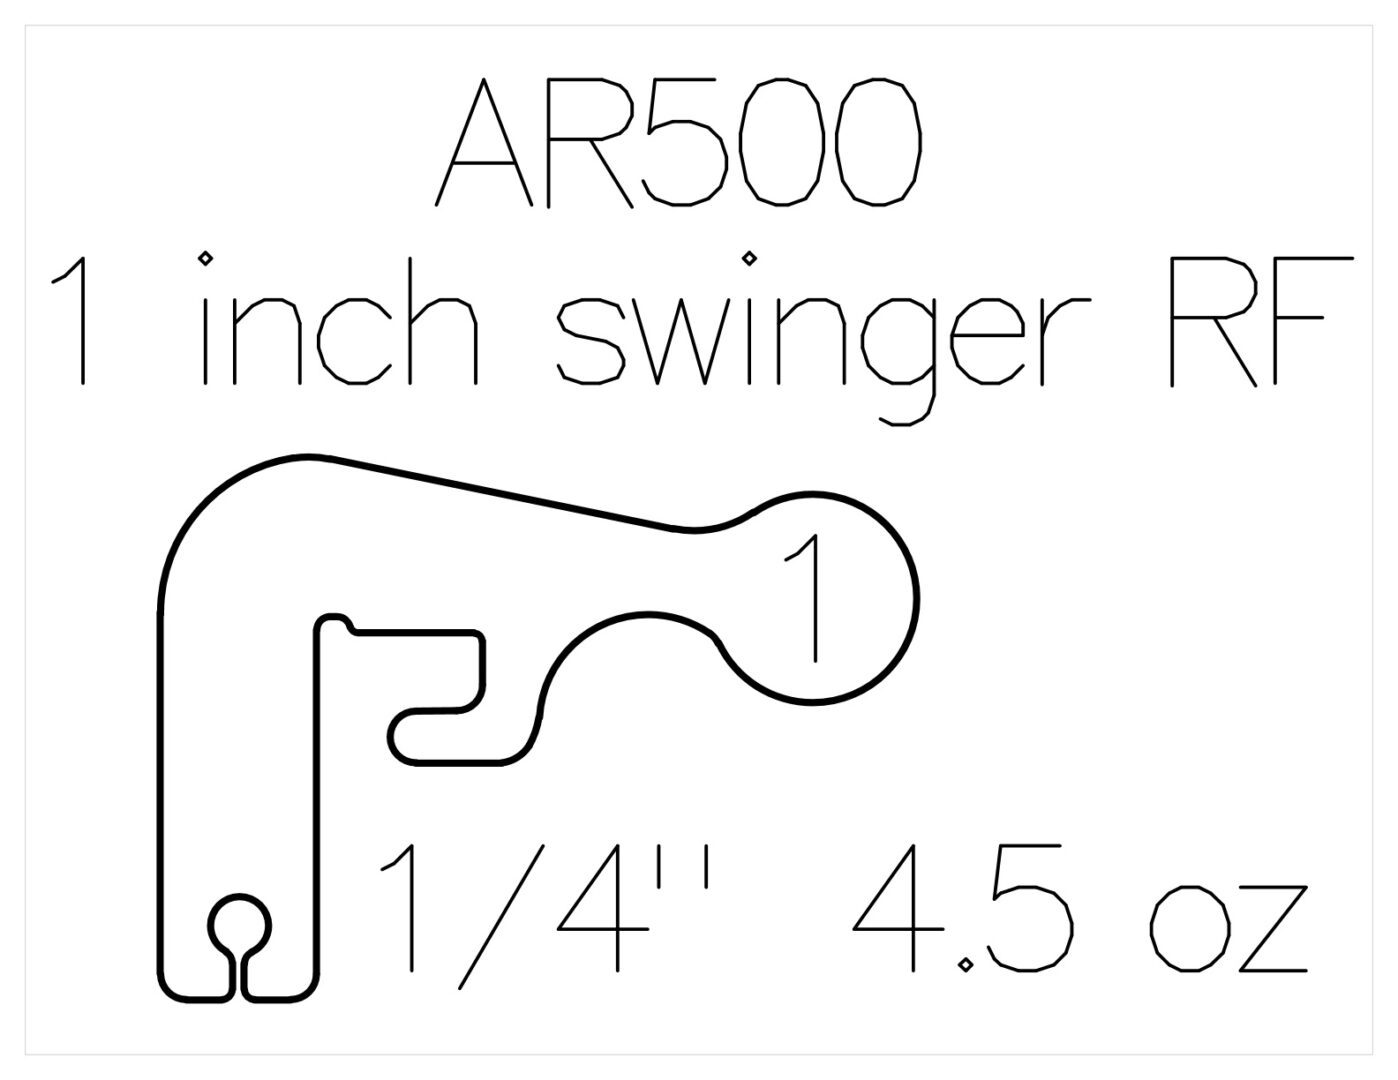 1 inch Swinger plate rimfire